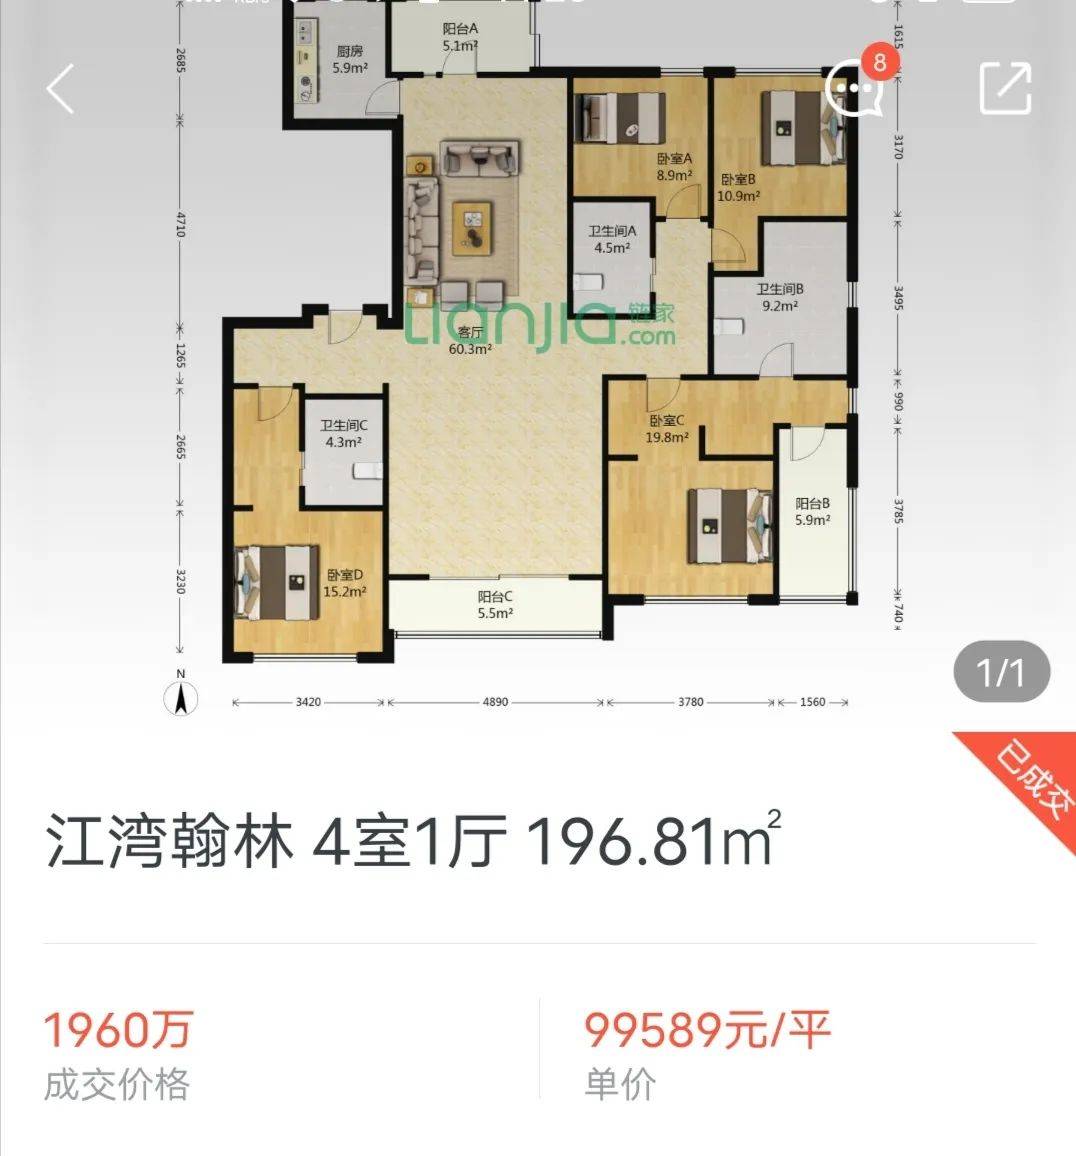 杨浦江湾翰林4房挂牌50天996万元㎡成交